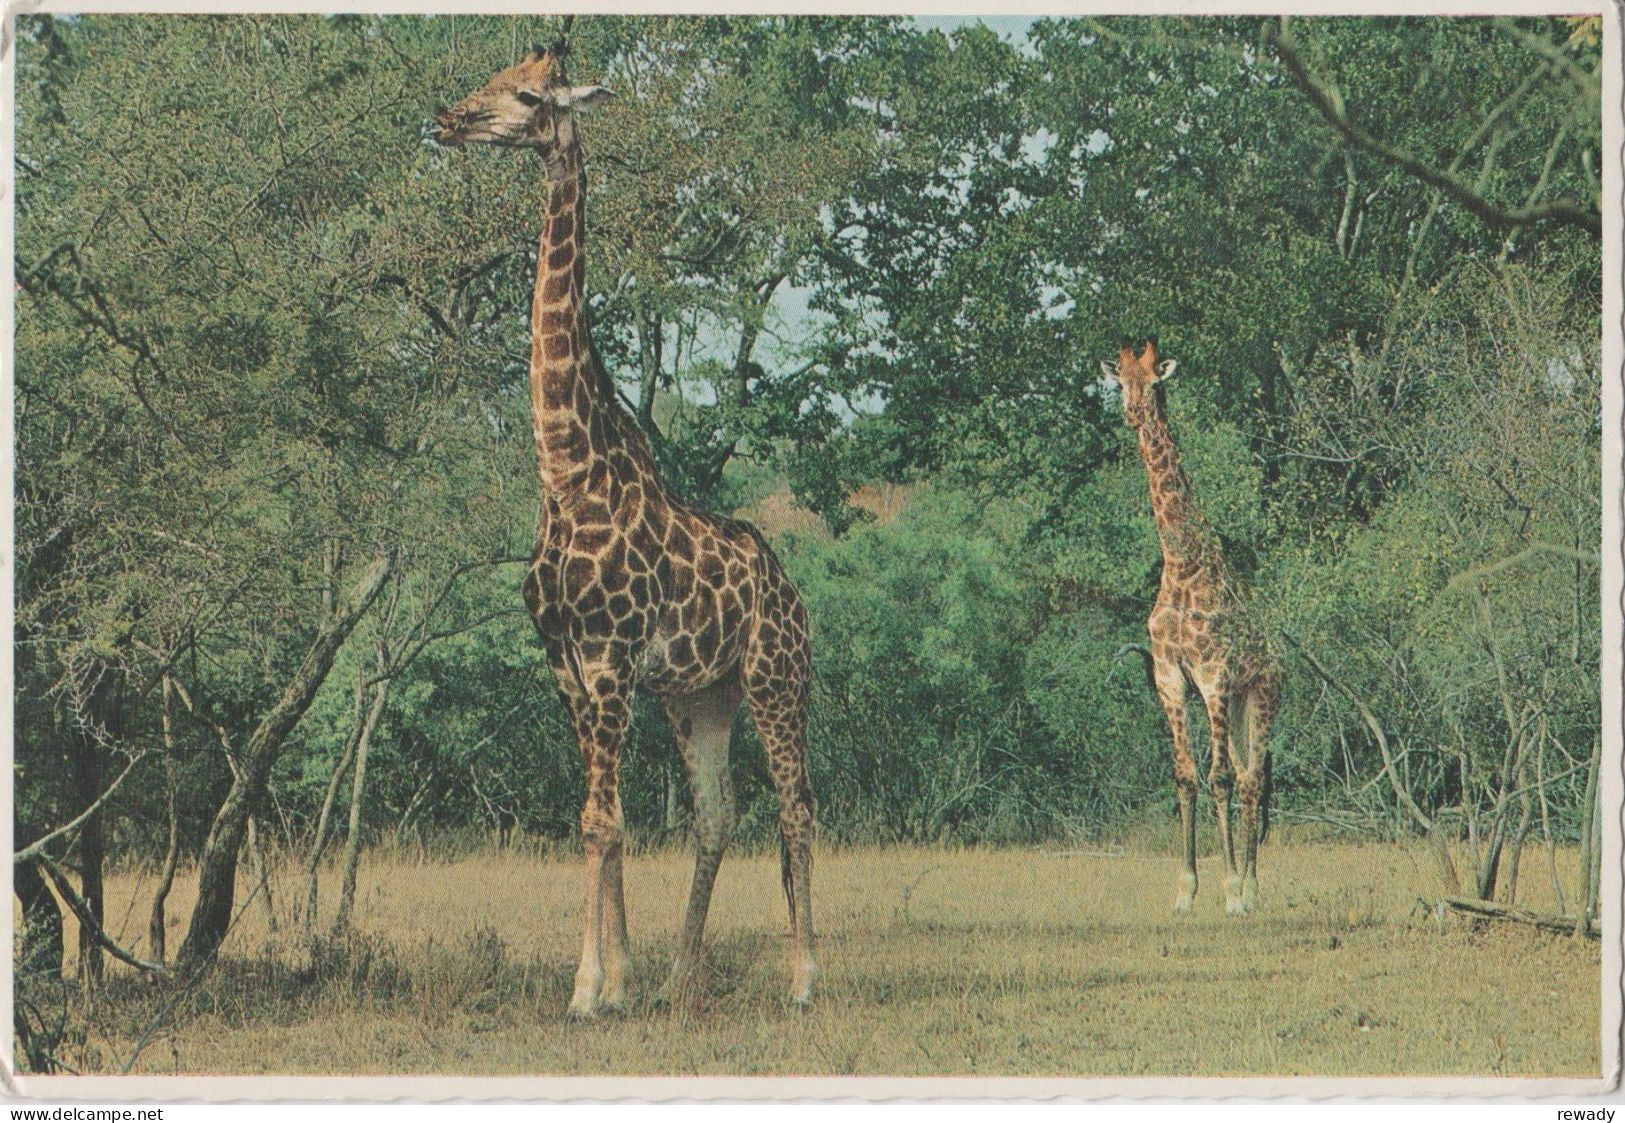 Giraffe - Girafe - Giraf - Giraffe In The Kruger National Park - Giraffes